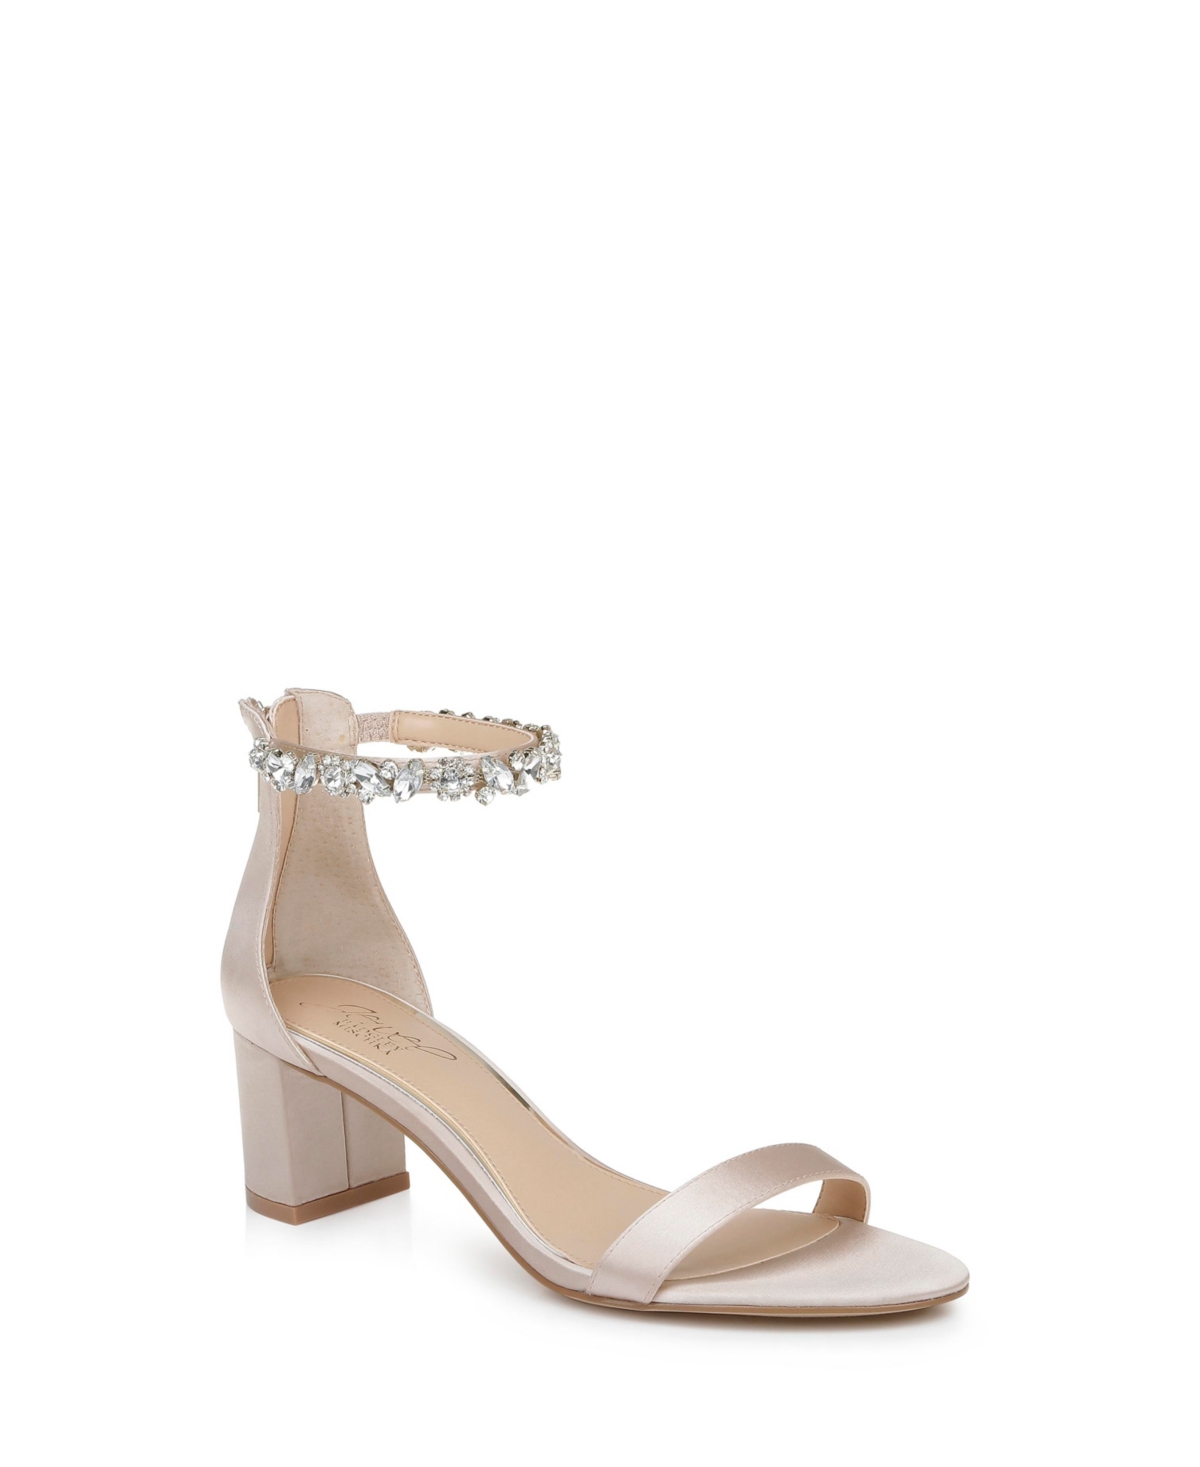 Women's Catalina Block Heel Evening Sandals - Rose Gold Glitter